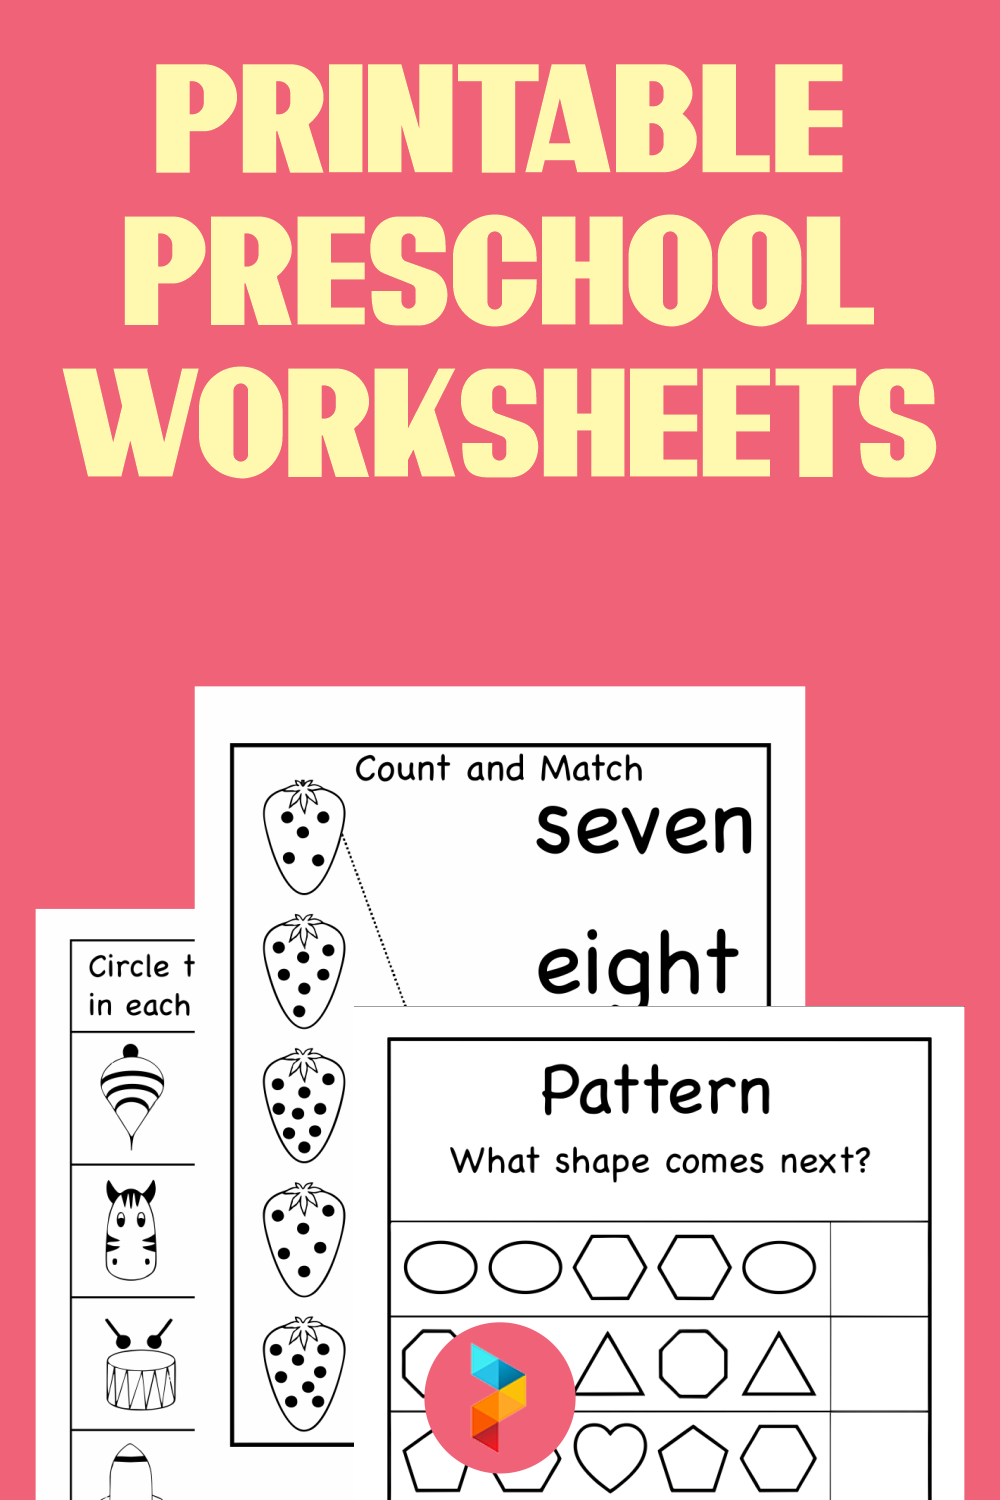 Free Printable Worksheets For Preschool Preschool Worksheets Photos 